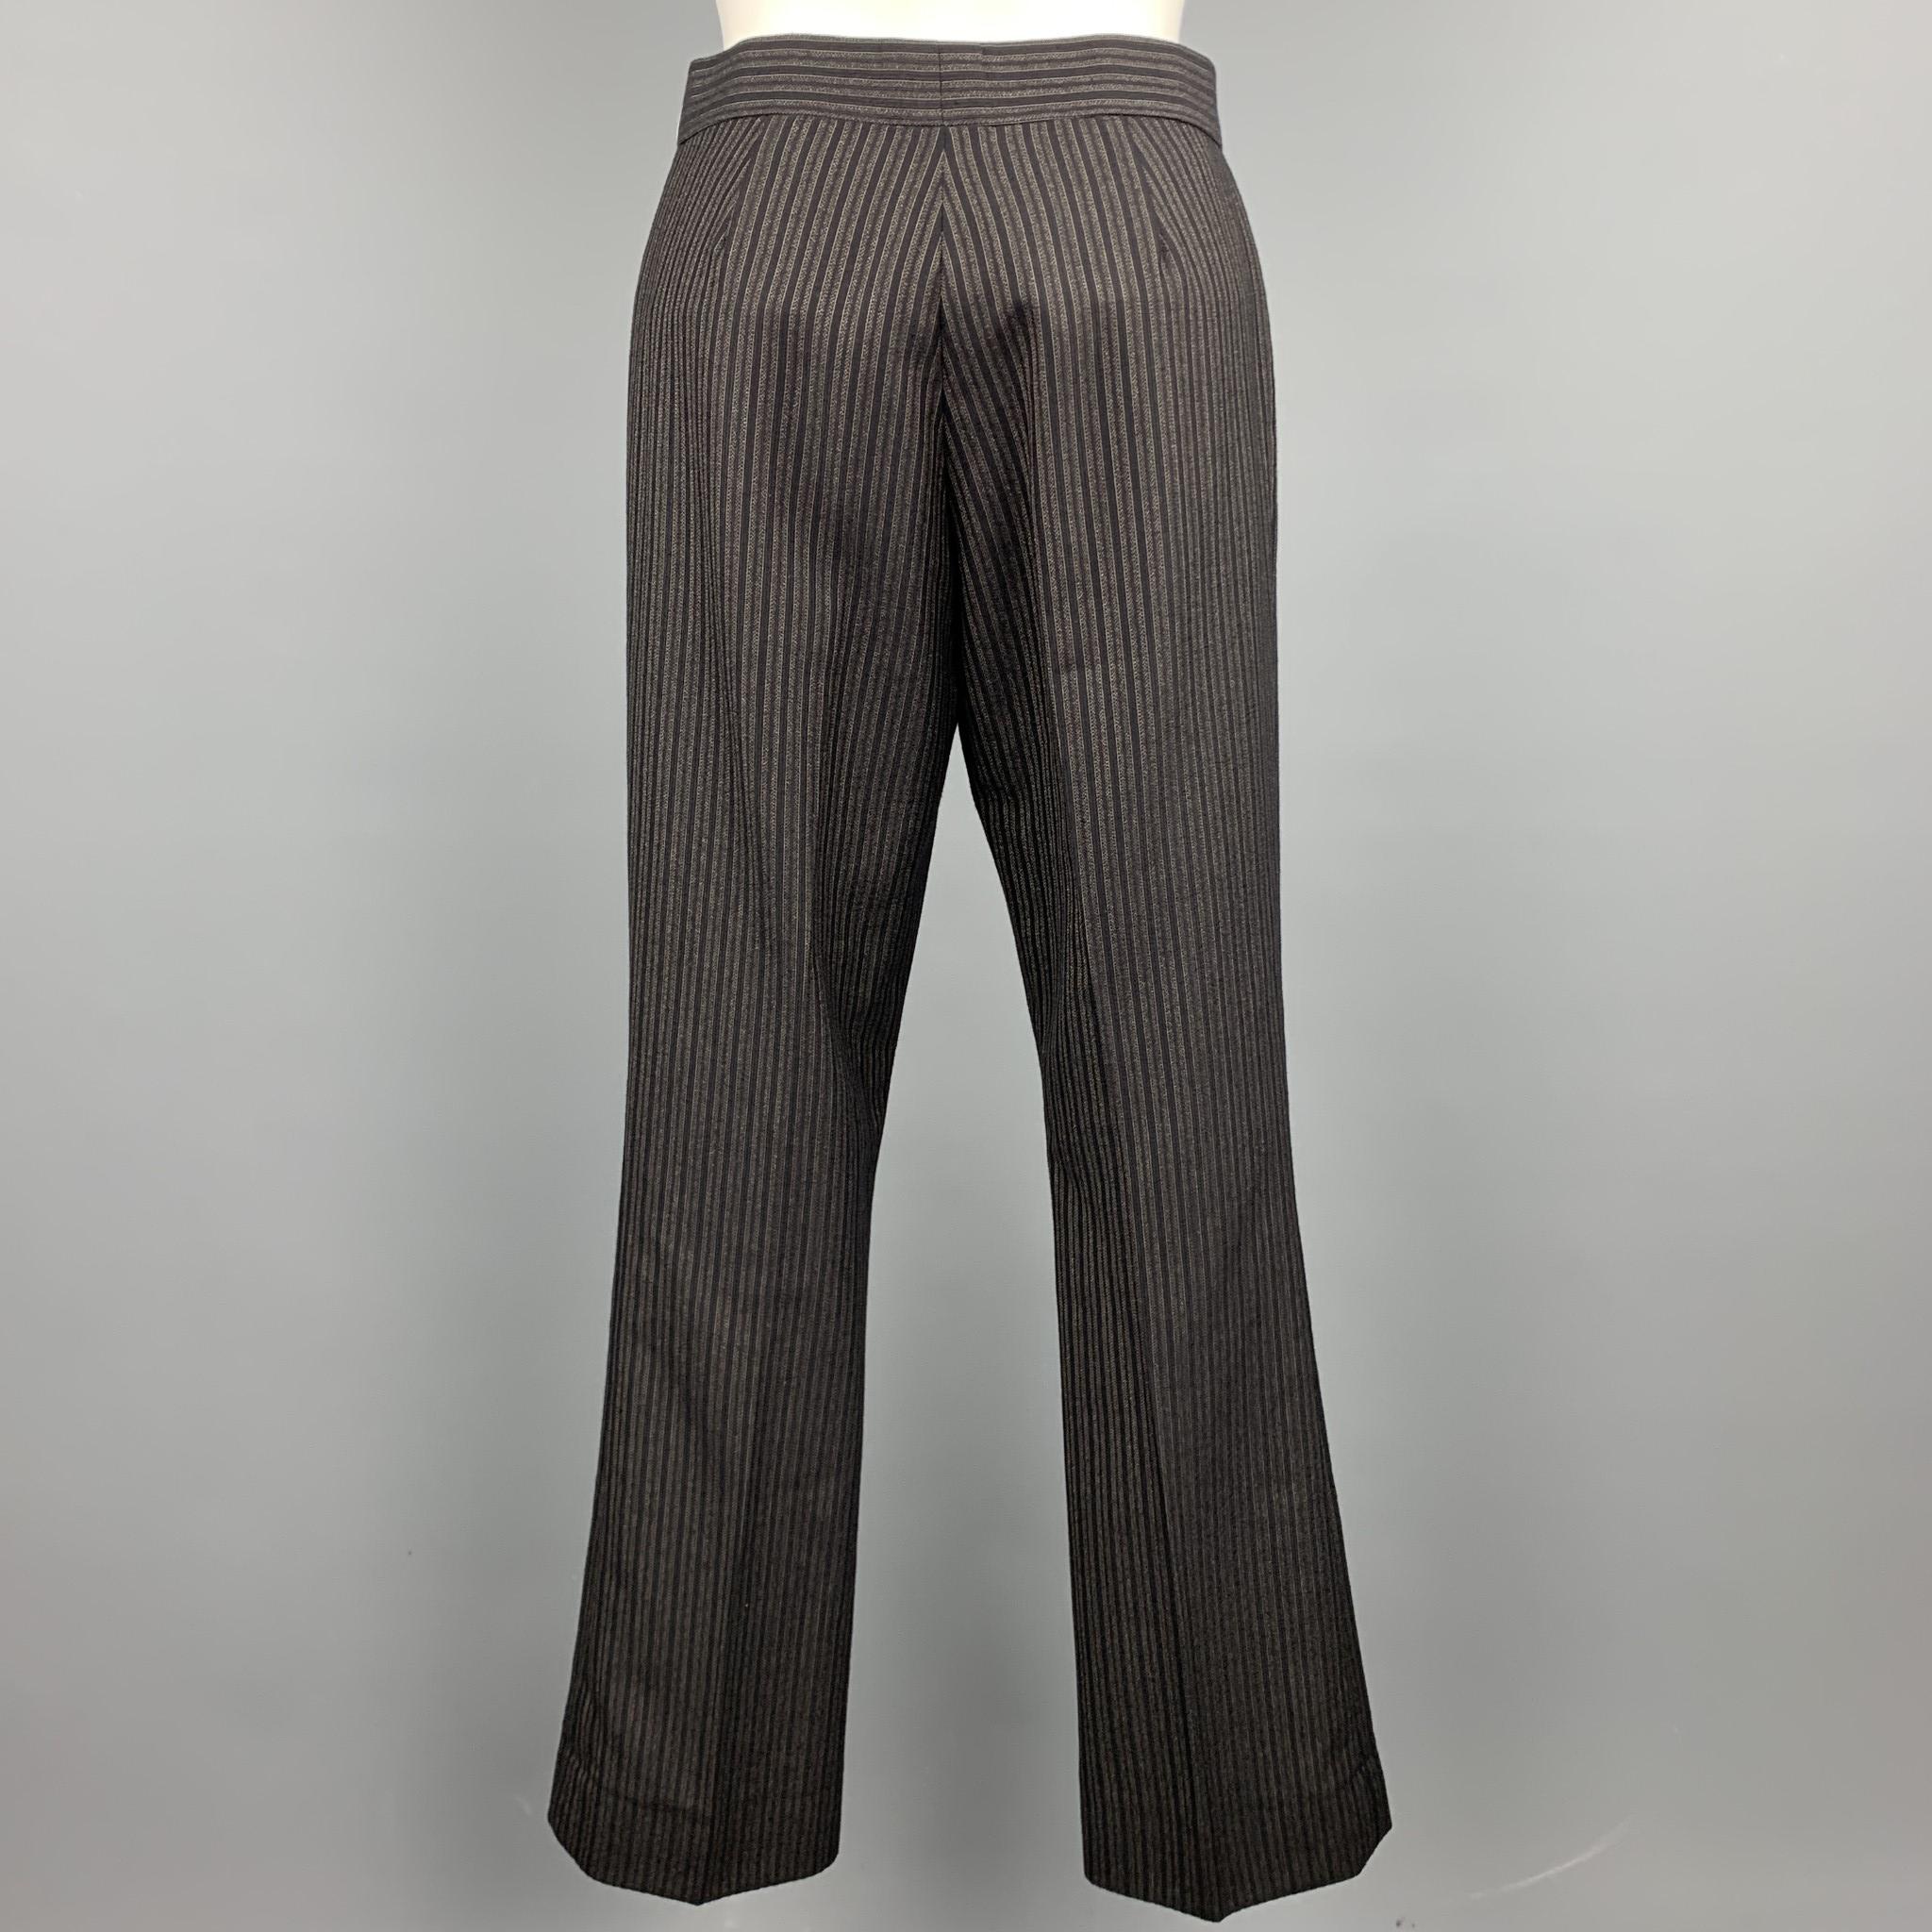 grey striped dress pants